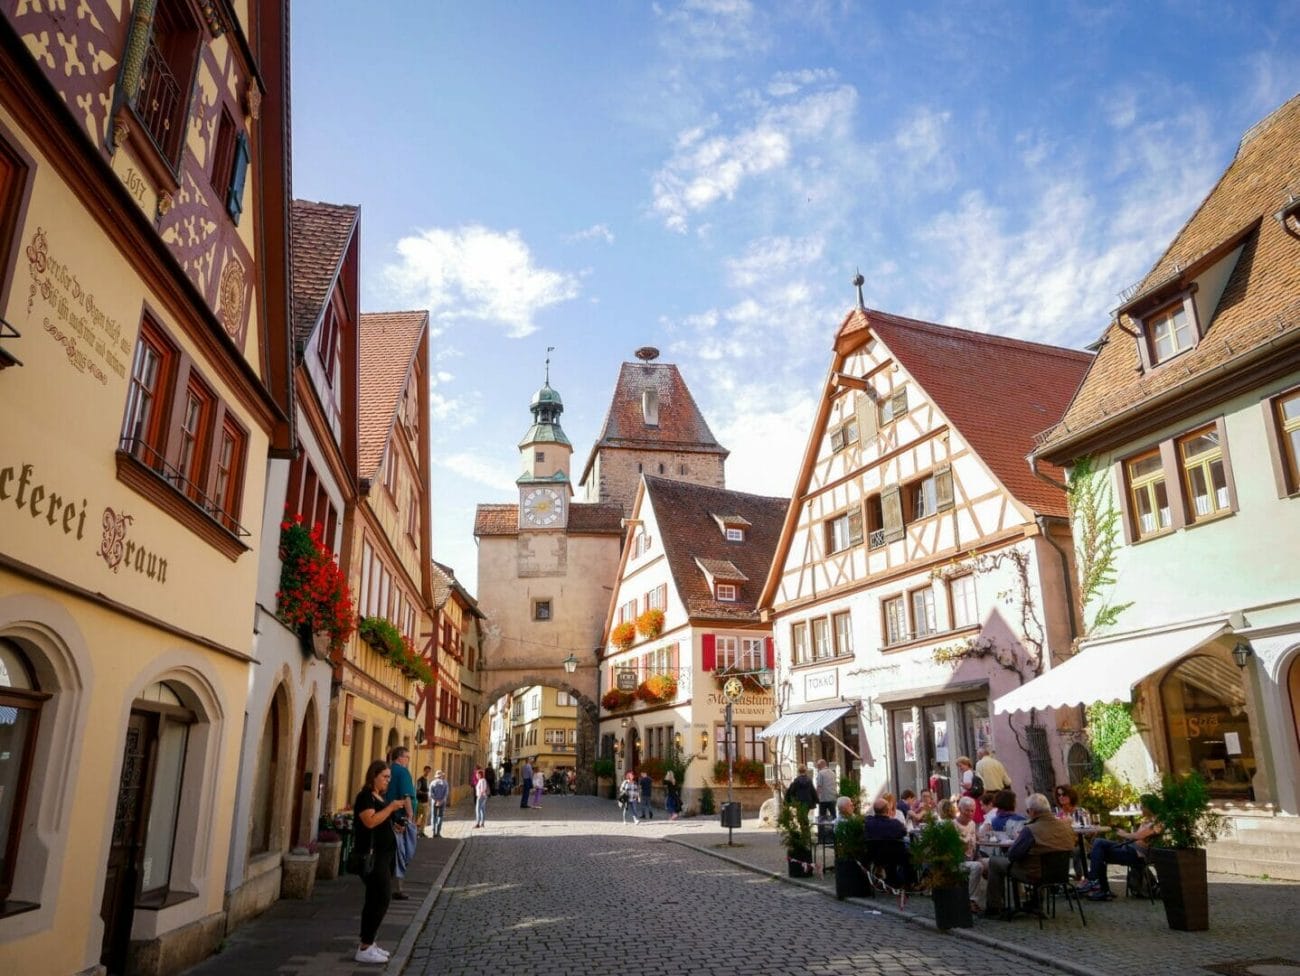 Foto von Gebäuden bei Tag - Top-Aktivitäten in Rothenburg ob der Tauber